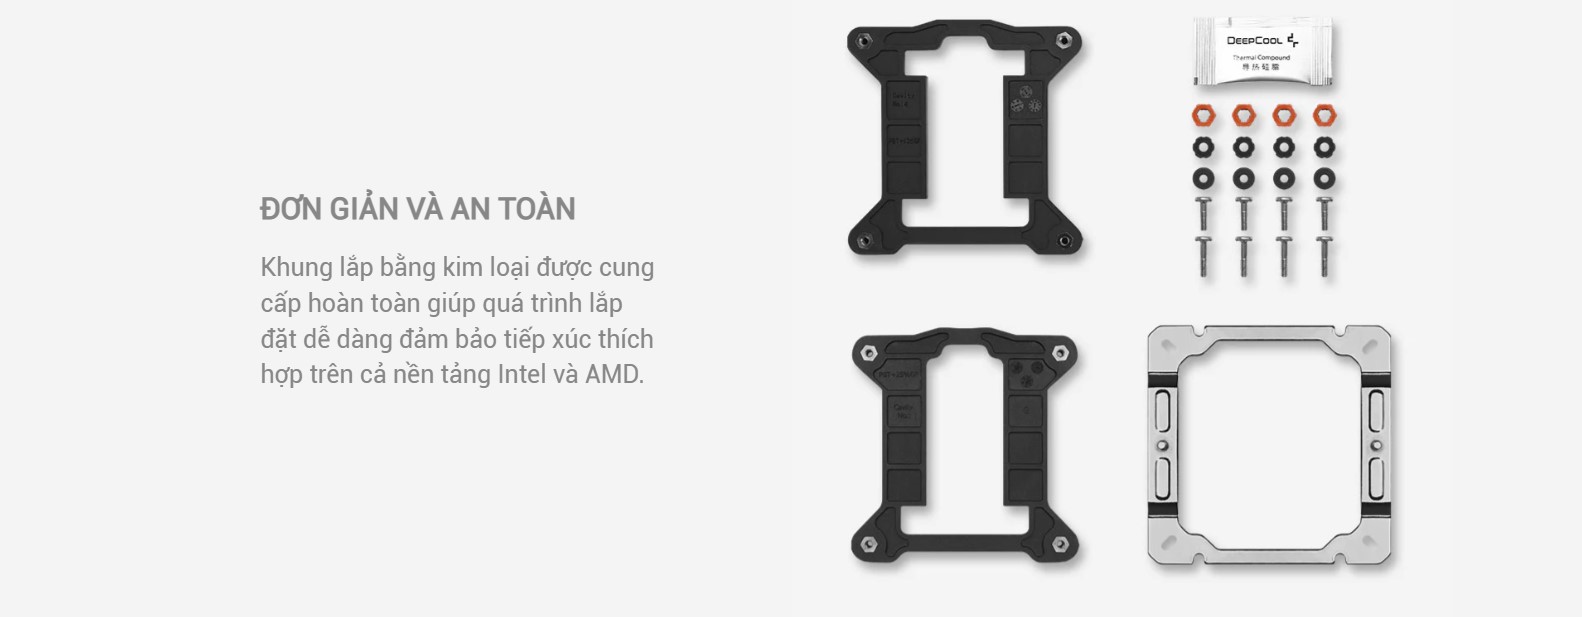 Khung lắp bằng kim loại được cung cấp hoàn toàn giúp quá trình lắp đặt dễ dàng đảm bảo tiếp xúc thích hợp trên cả nền tảng Intel và AMD.